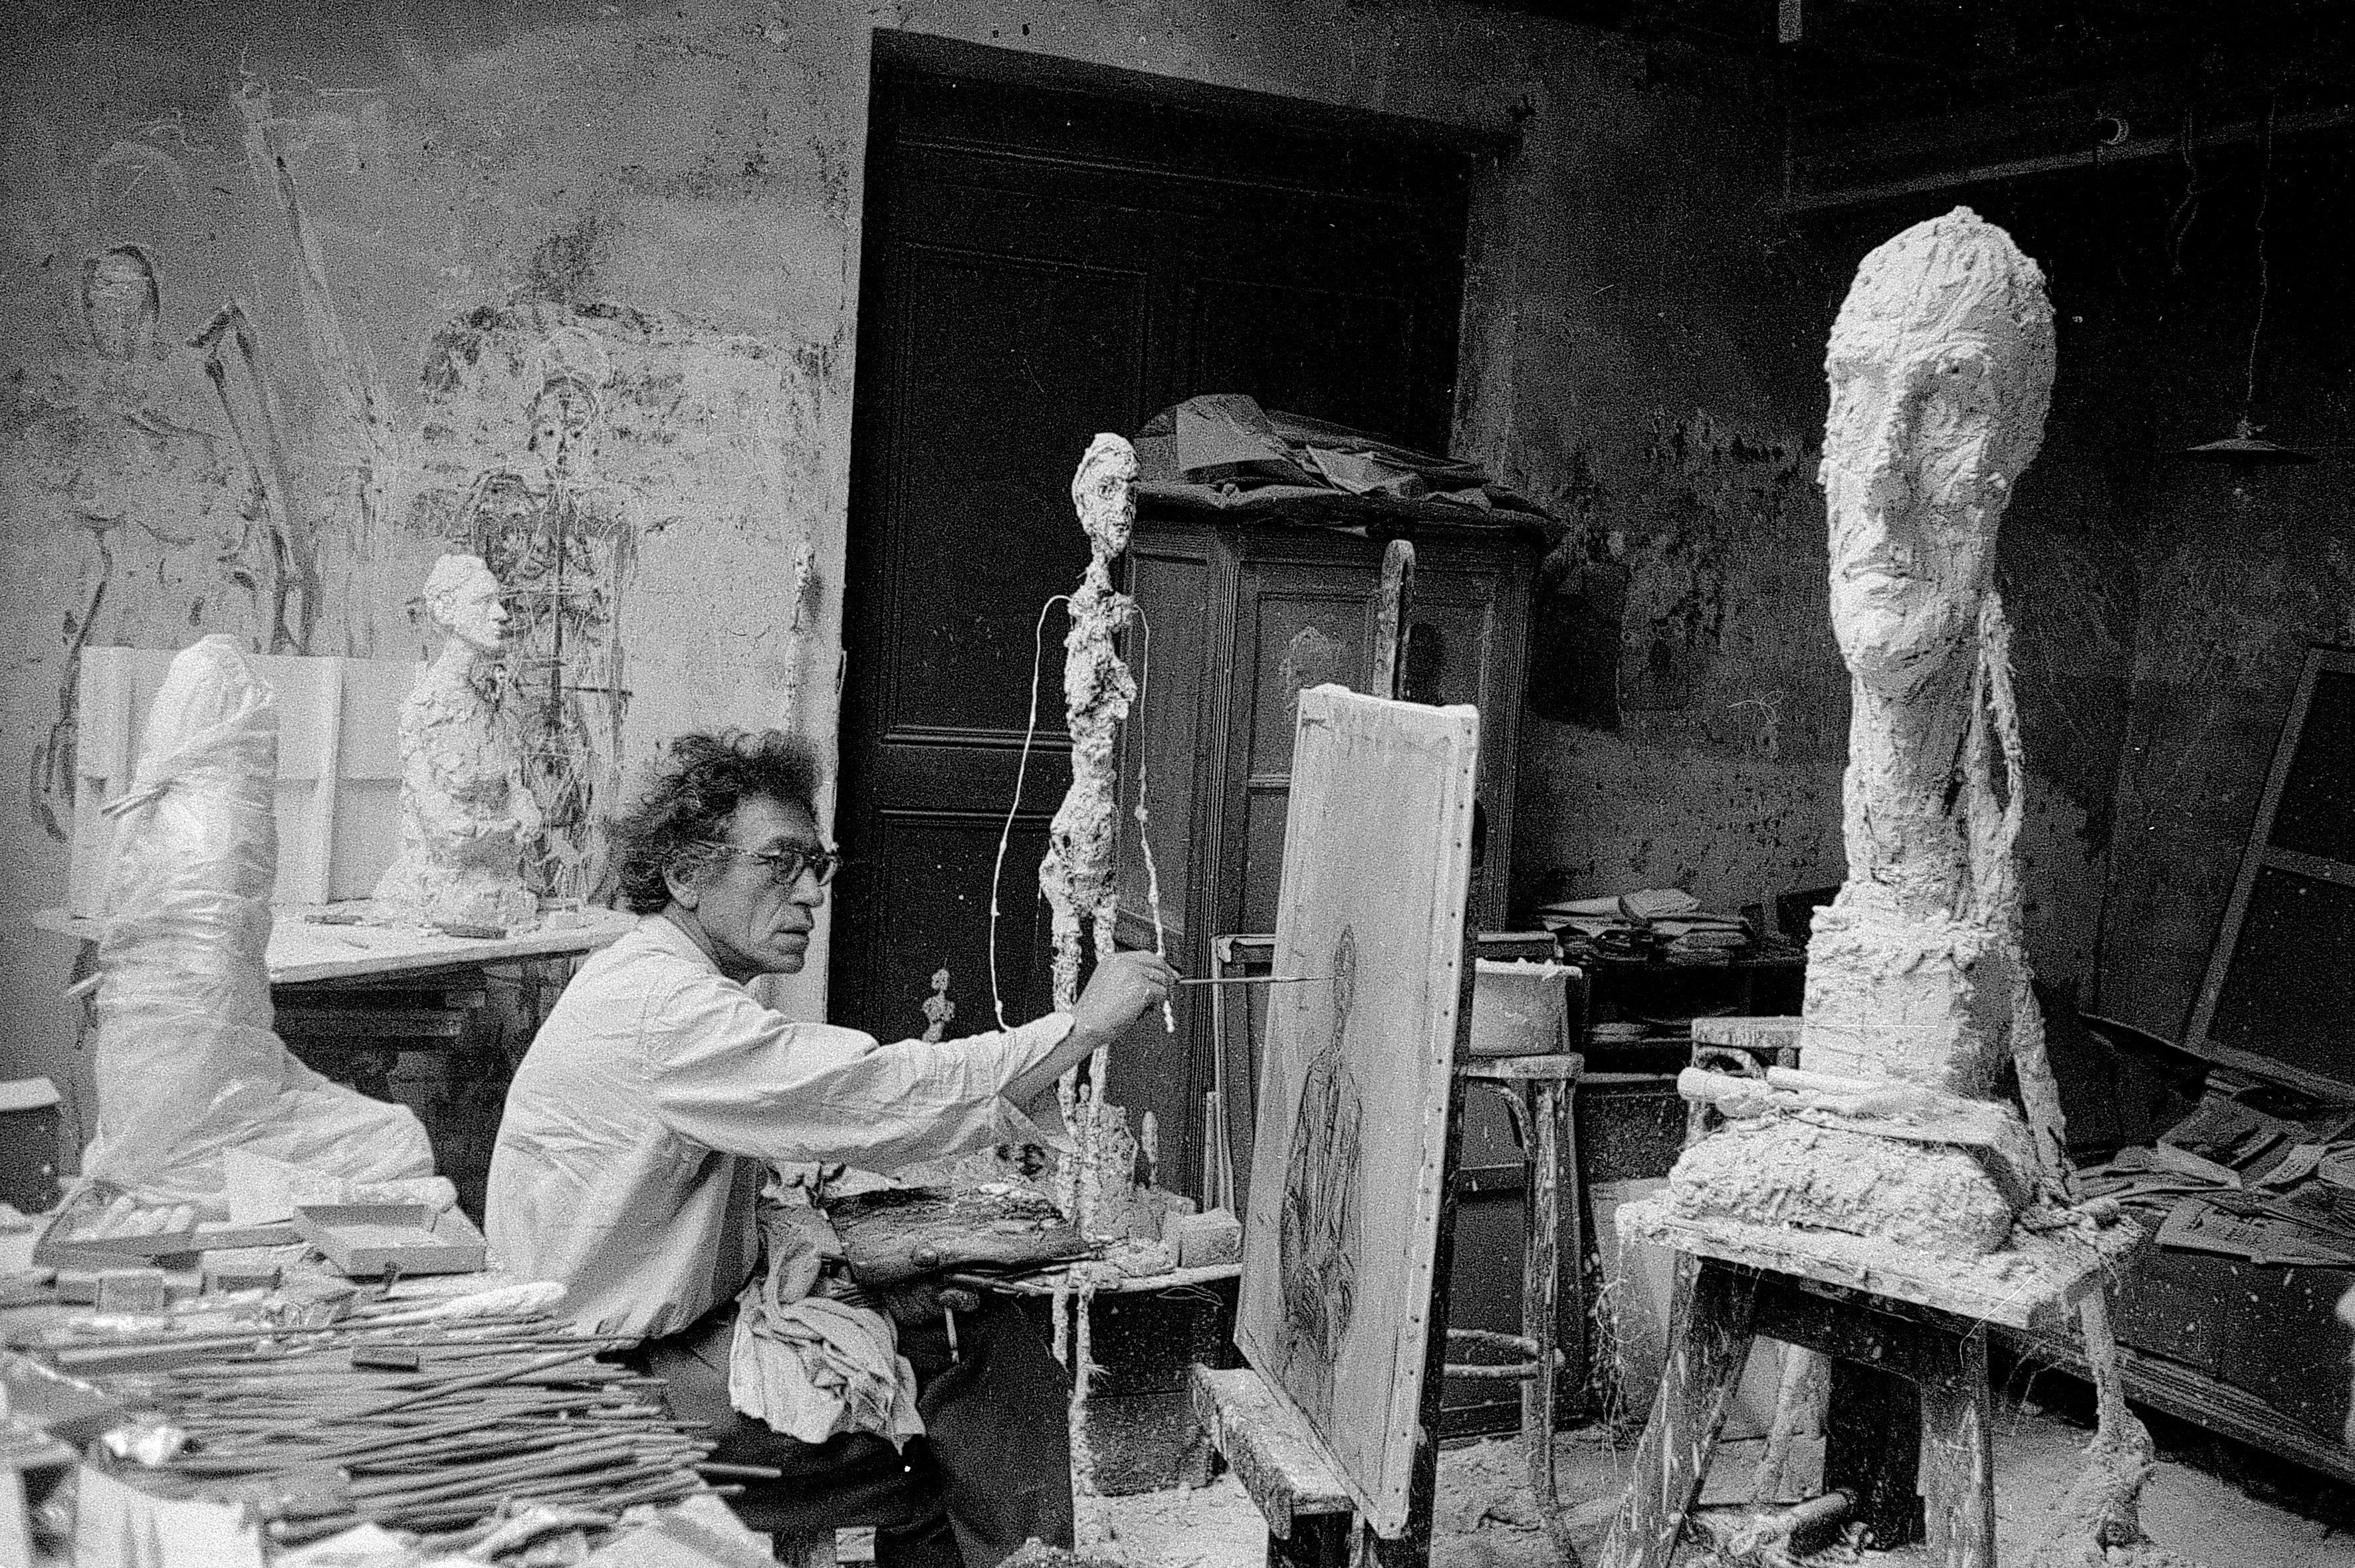 Alberto Giacometti in mostra a Parigi - immagine 12